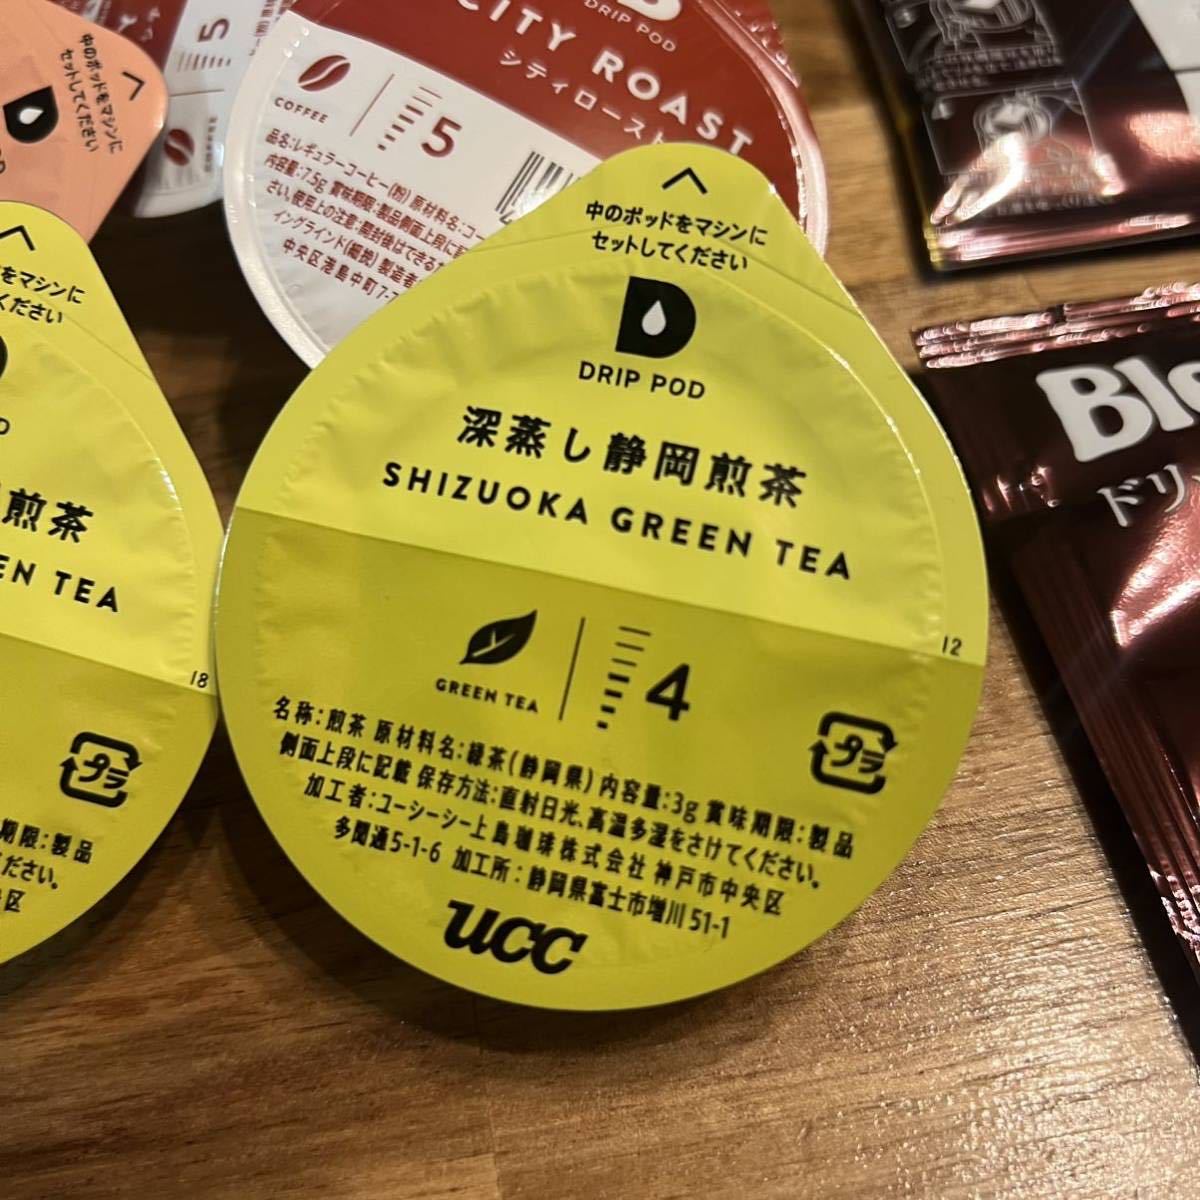 UCC карниз Pod Capsule 5 шт b Len ti карниз упаковка 2 шт. комплект .... Blend Earl Gray черный чай глубокий .. Shizuoka зеленый чай City мясо для жаркого to